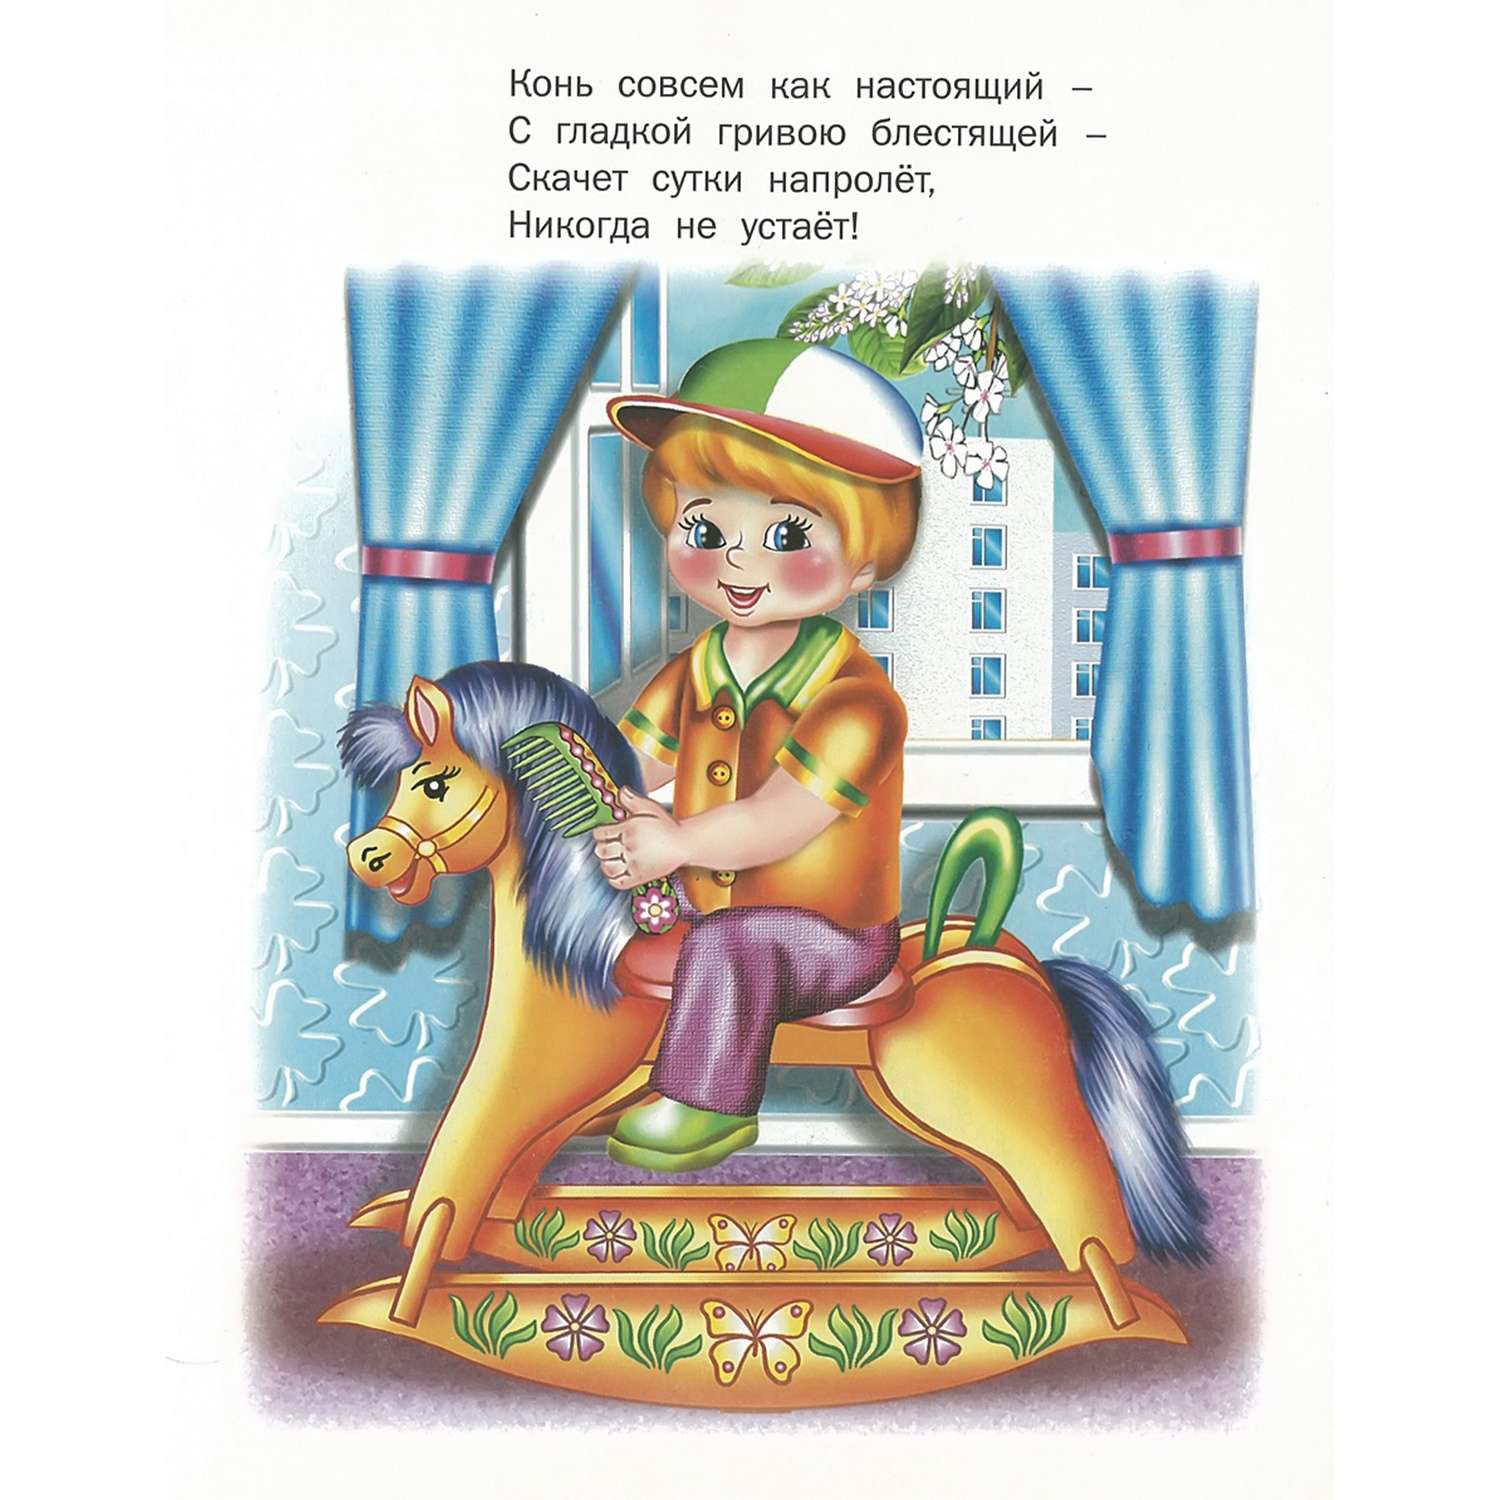 Книга Русич Поиграй-ка. Сборник стихов для детей - фото 4